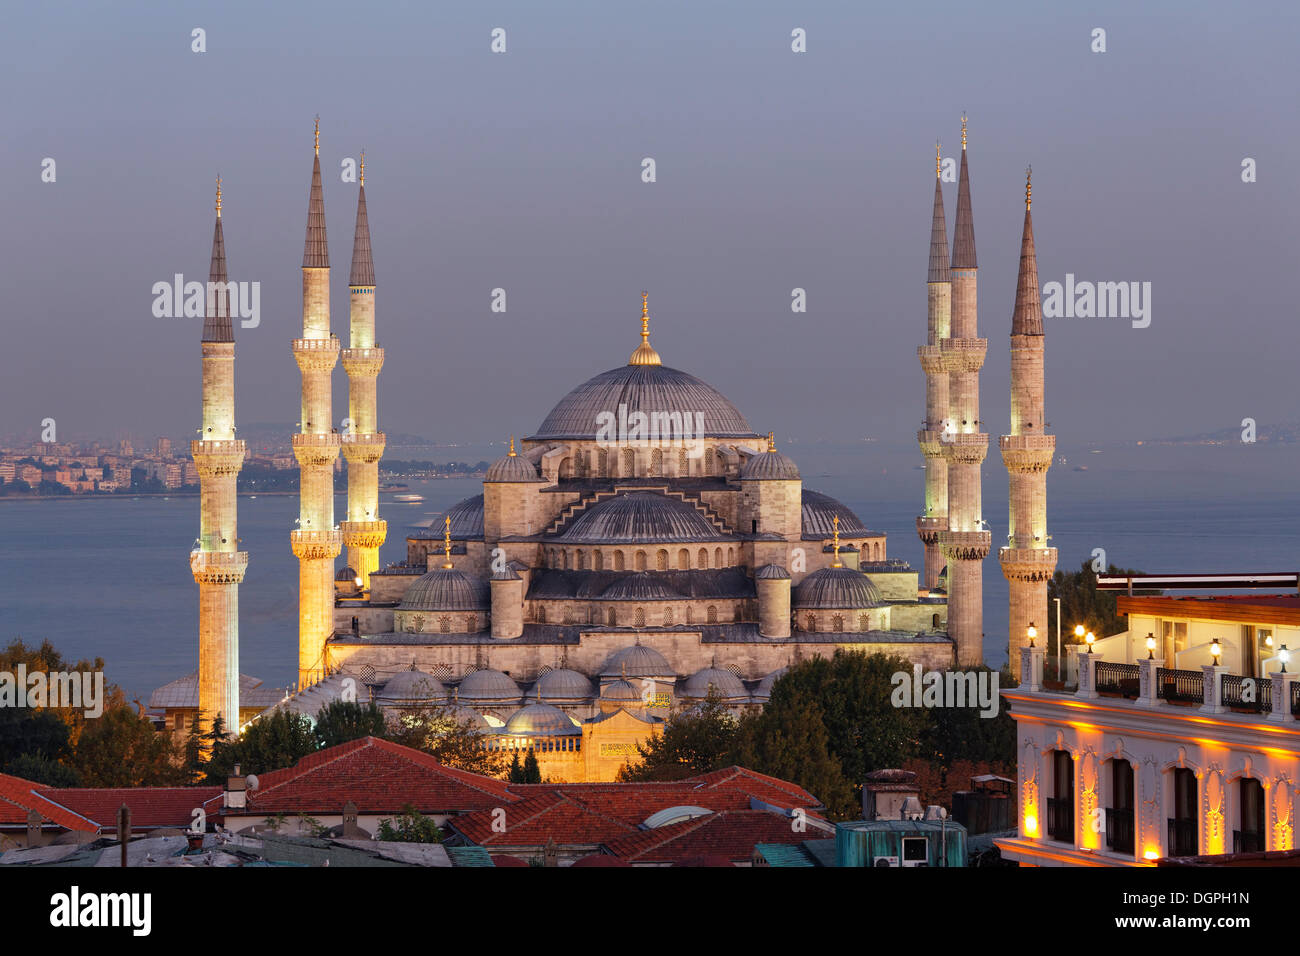 Blaue Moschee, Sultan Ahmed Mosque oder Sultanahmet Camii, Istanbul, europäische Seite, Provinz Istanbul, Türkei, europäische Seite Stockfoto